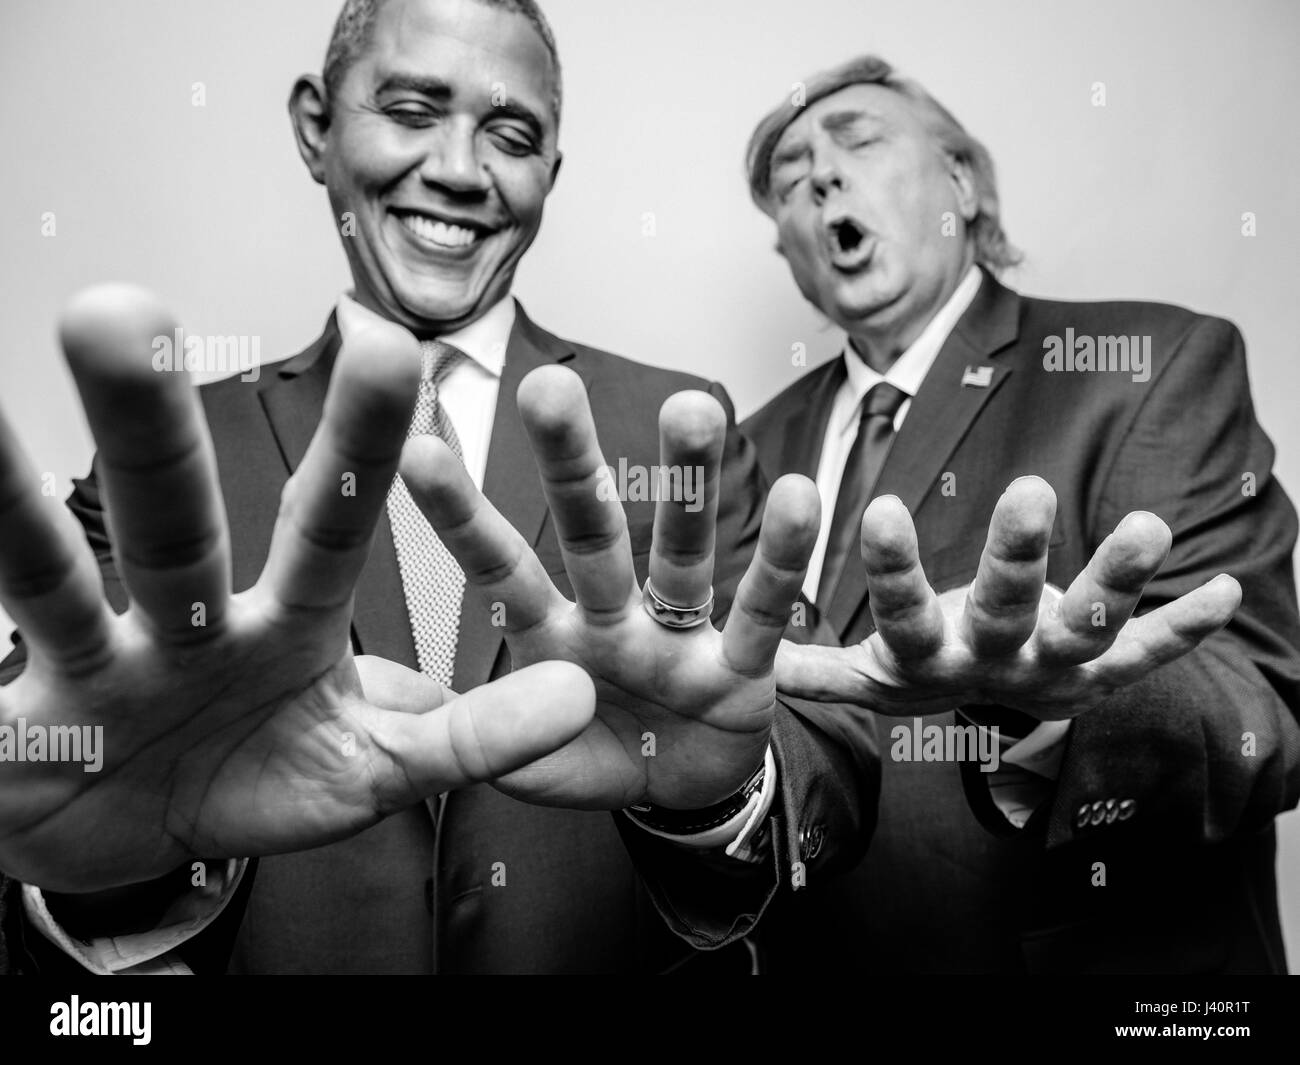 El presidente Barack Obama y el presidente Donald J. Trump lookalikes comparar los tamaños de manos para ver quién tiene la más grande de manos durante una sesión de fotos en Hong Kong. Foto de stock